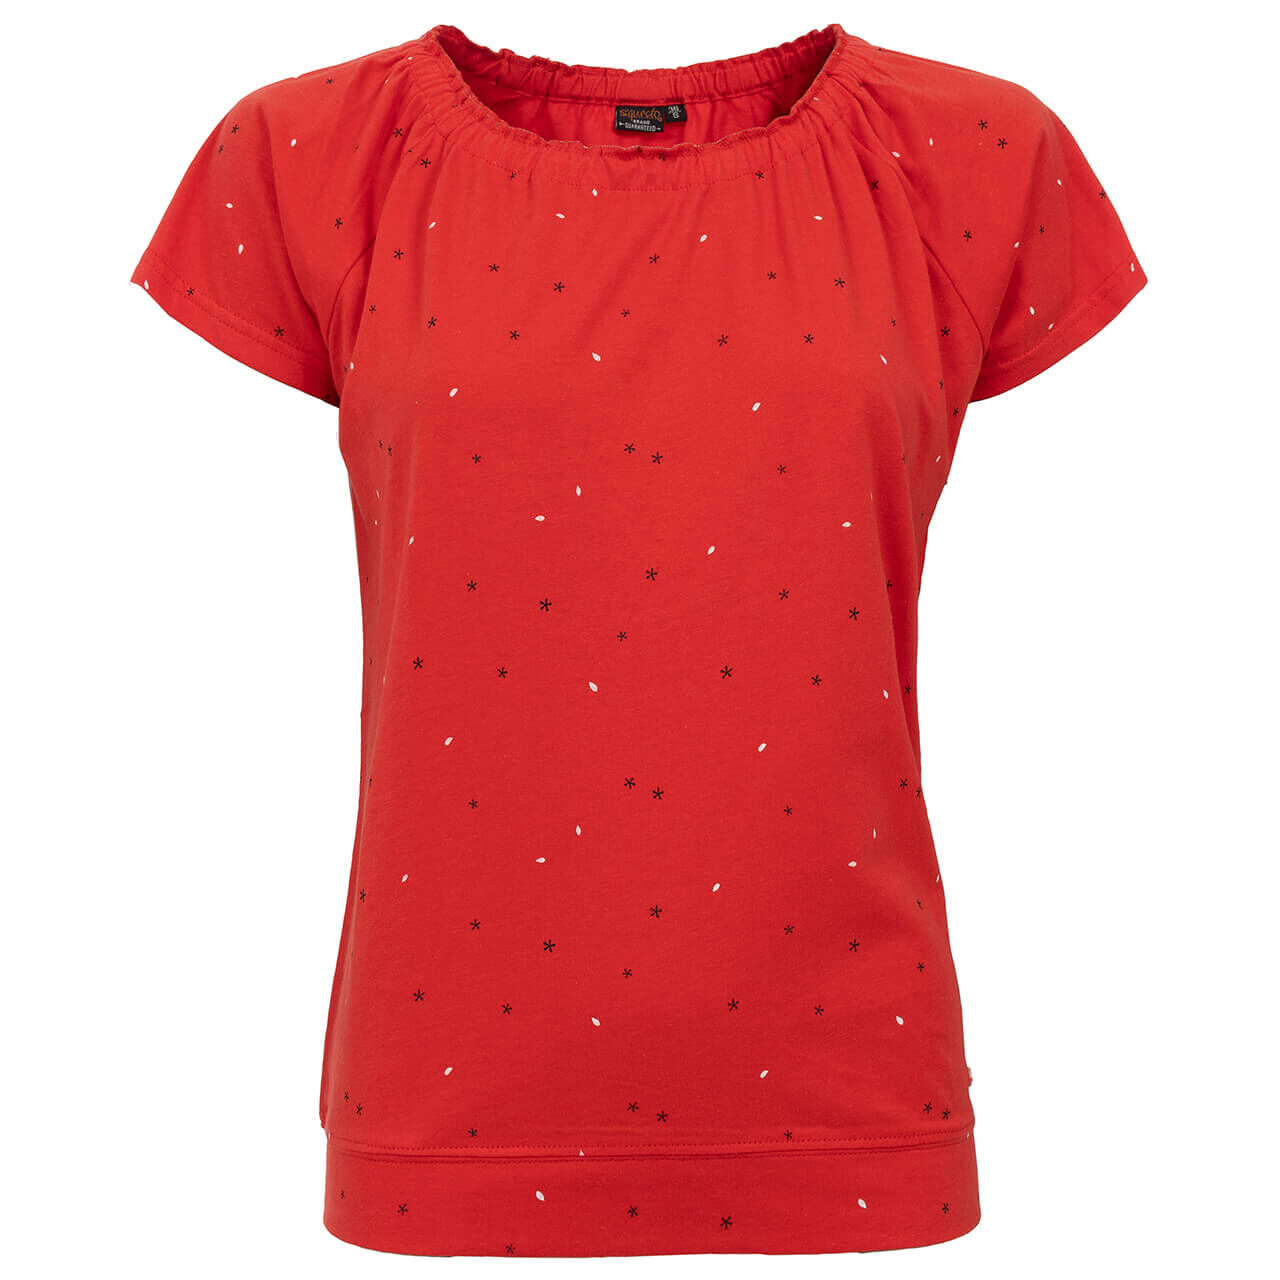 Soquesto T-Shirt für Damen in Rot mit Print, FarbNr.: 1285